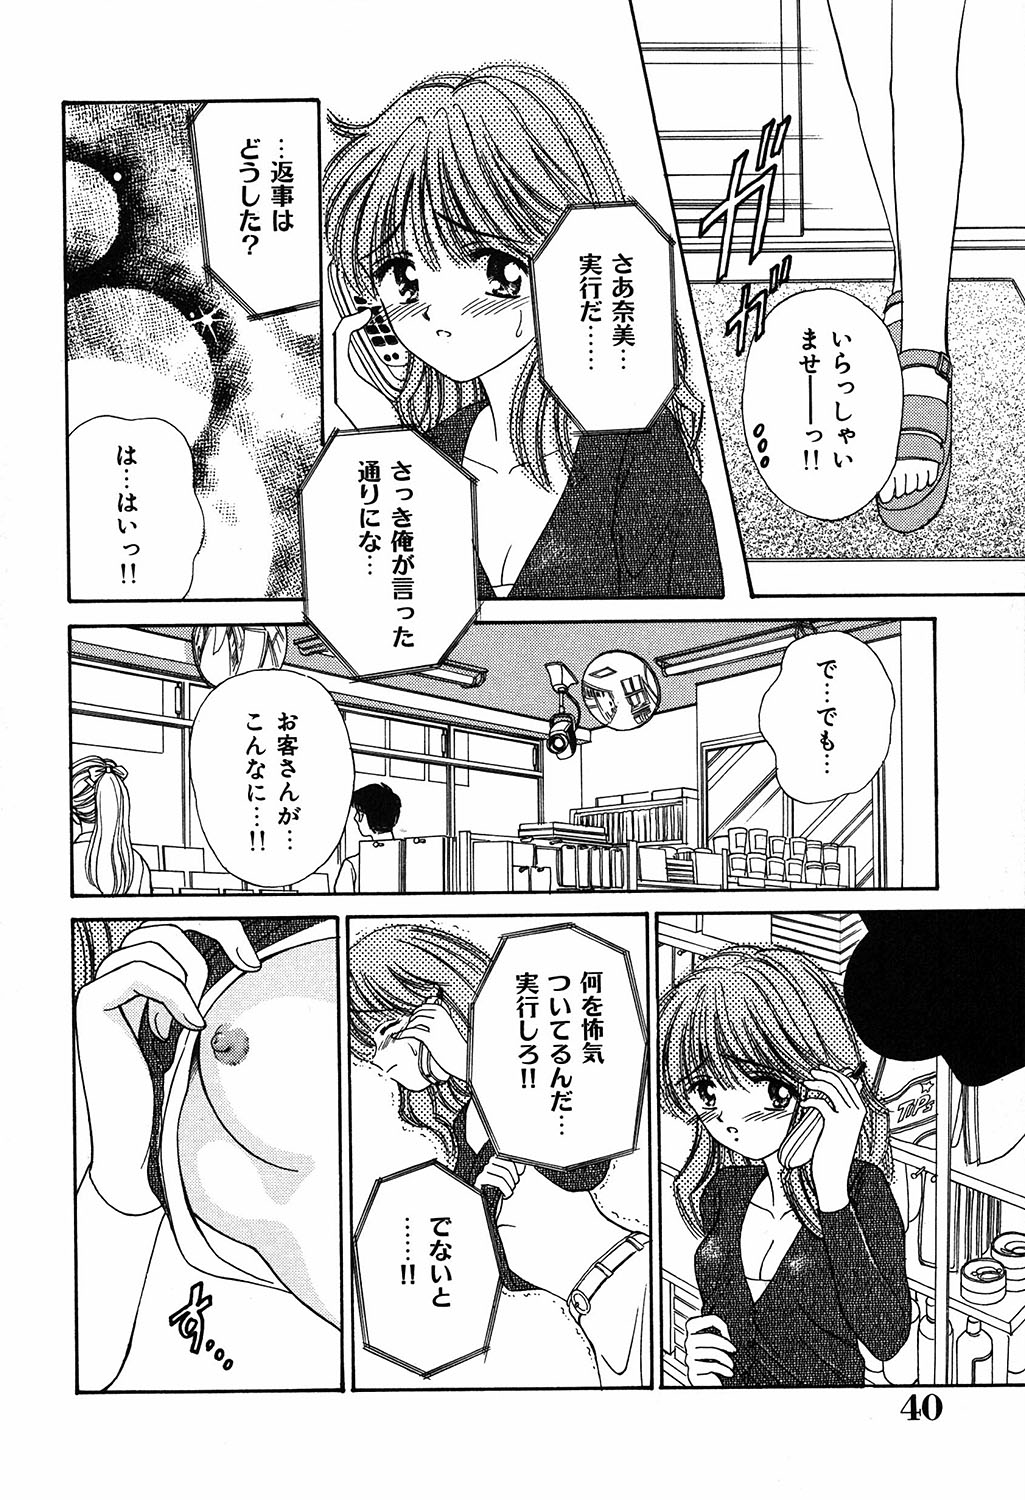 [Ayumi] Daisuki page 40 full